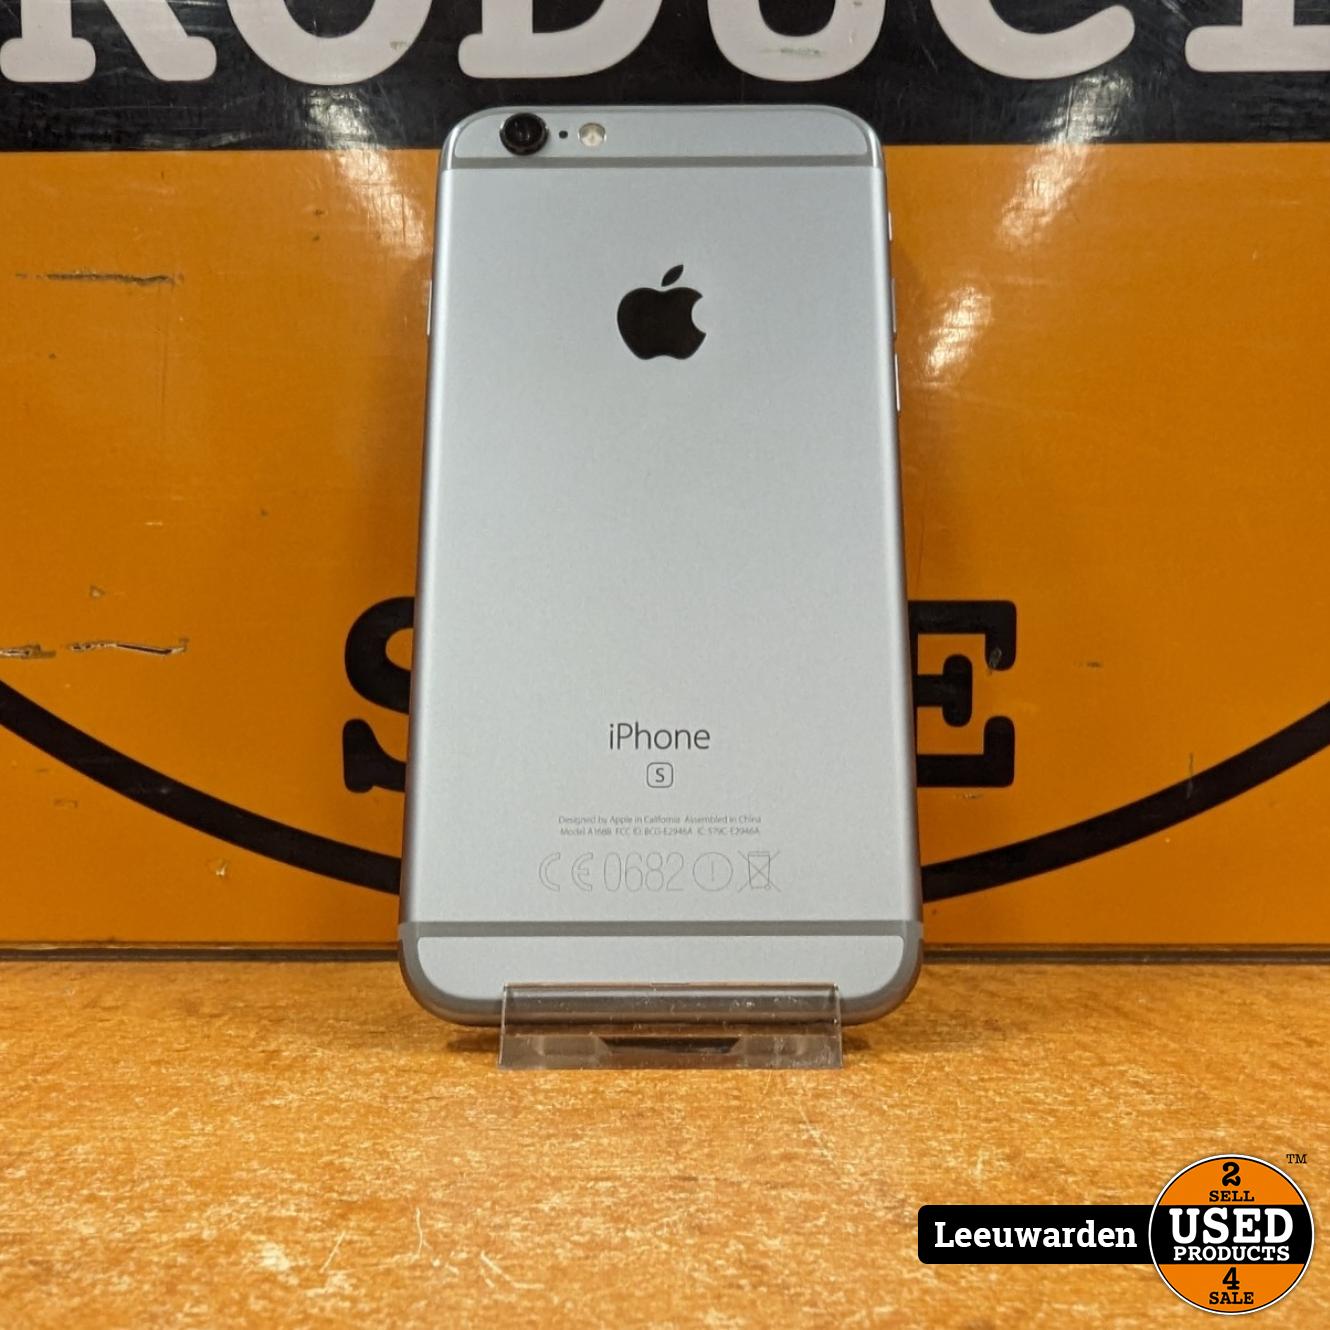 gevaarlijk Moskee meteoor Apple iPhone 6S - 32 GB - Zwart - iOS 15 - Used Products Leeuwarden